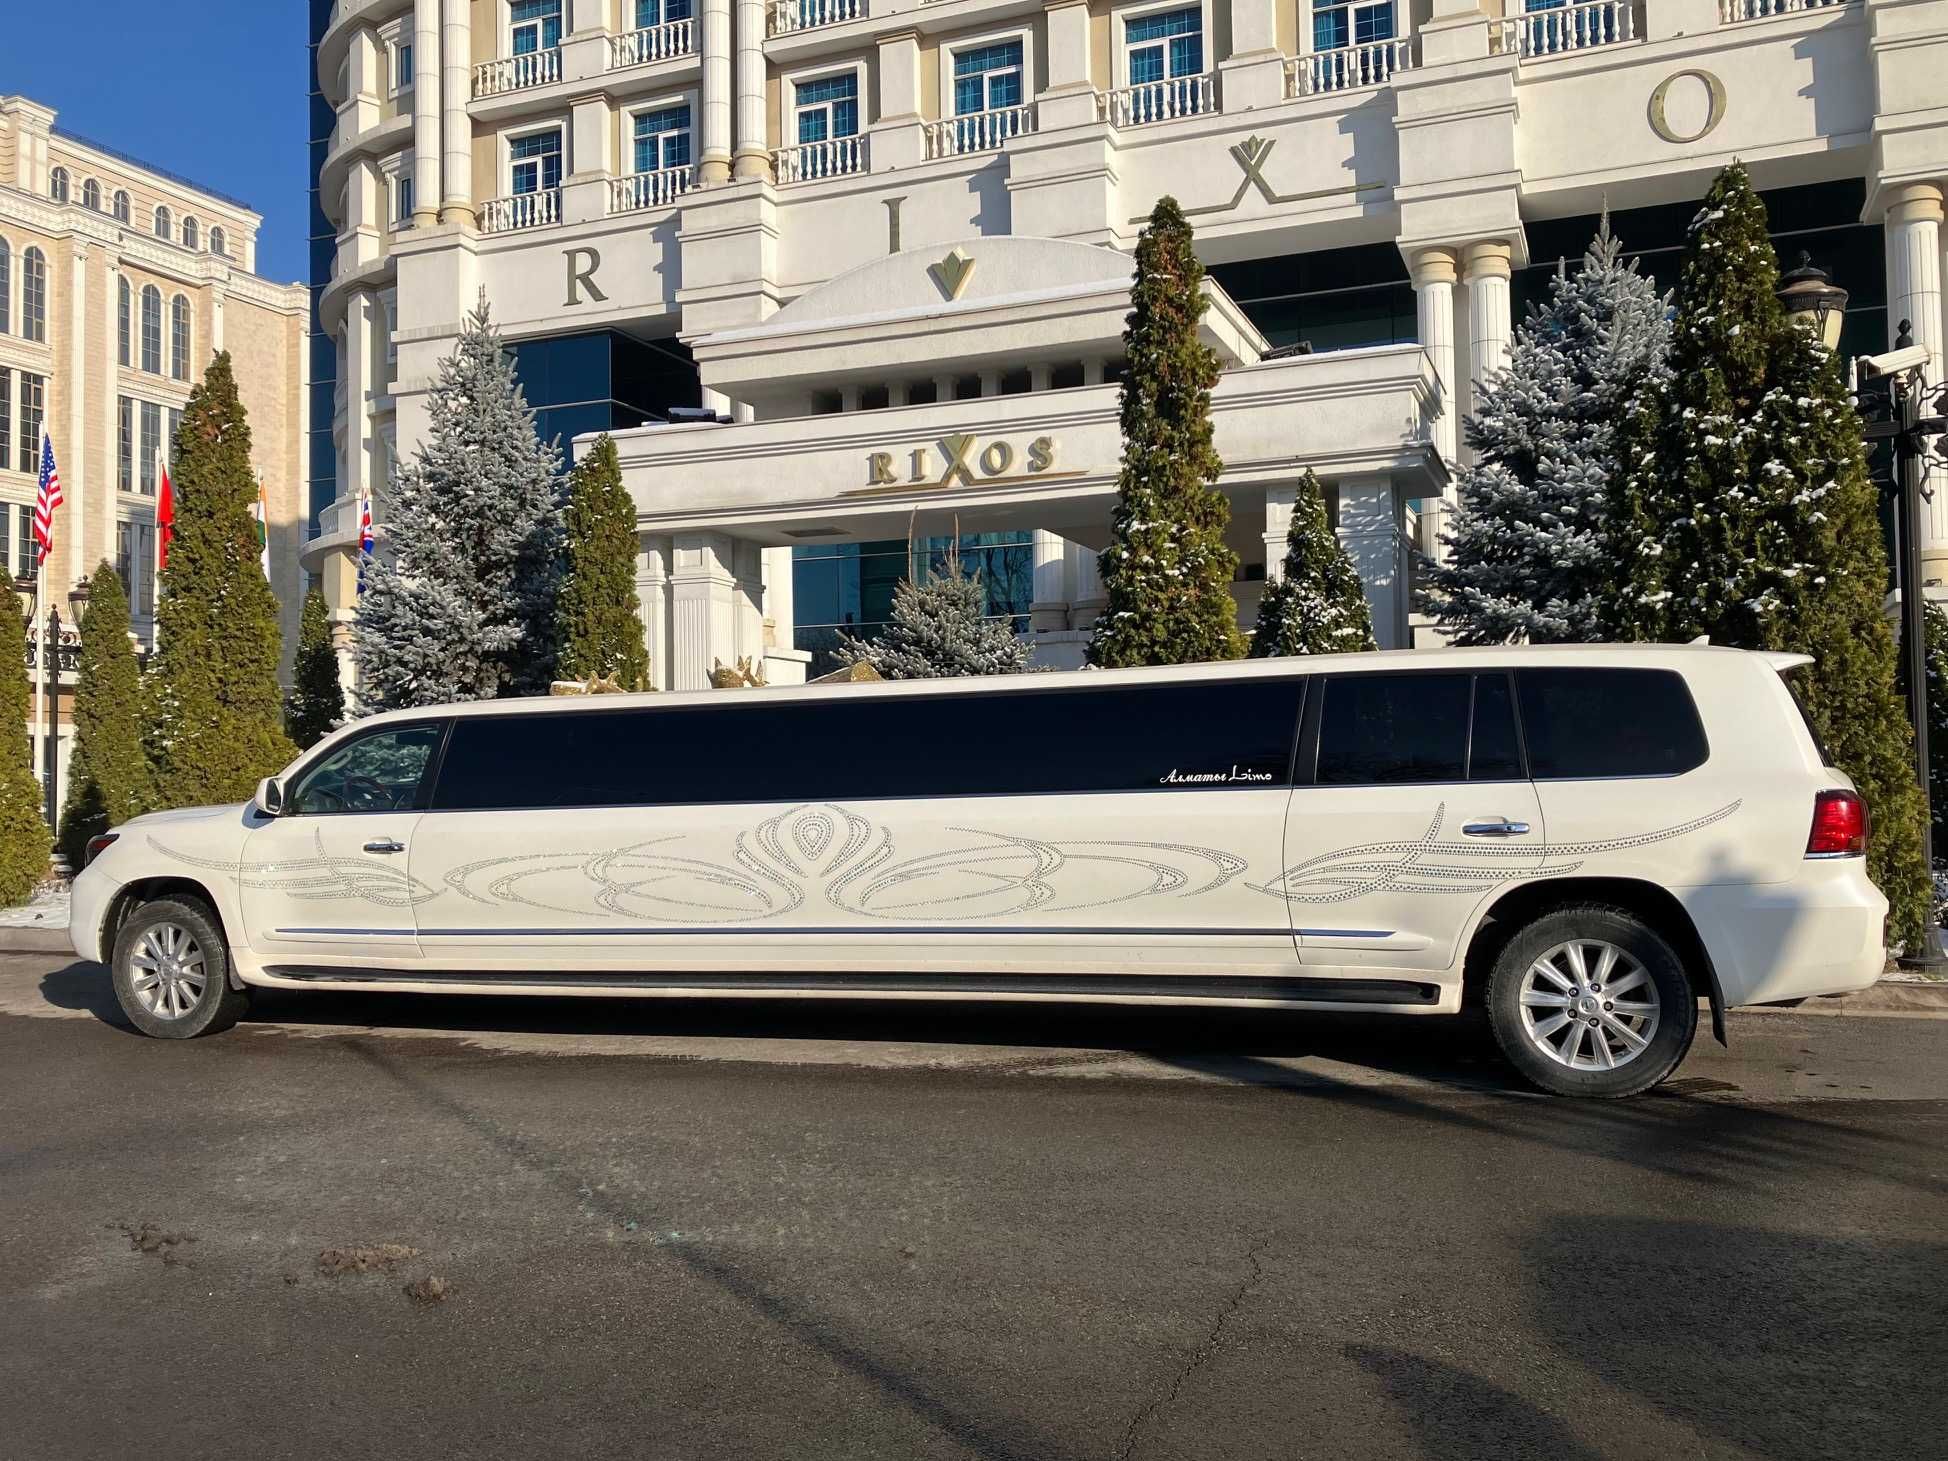 Аренда лимузинов в Москве недорого – заказать лимузин на свадьбу